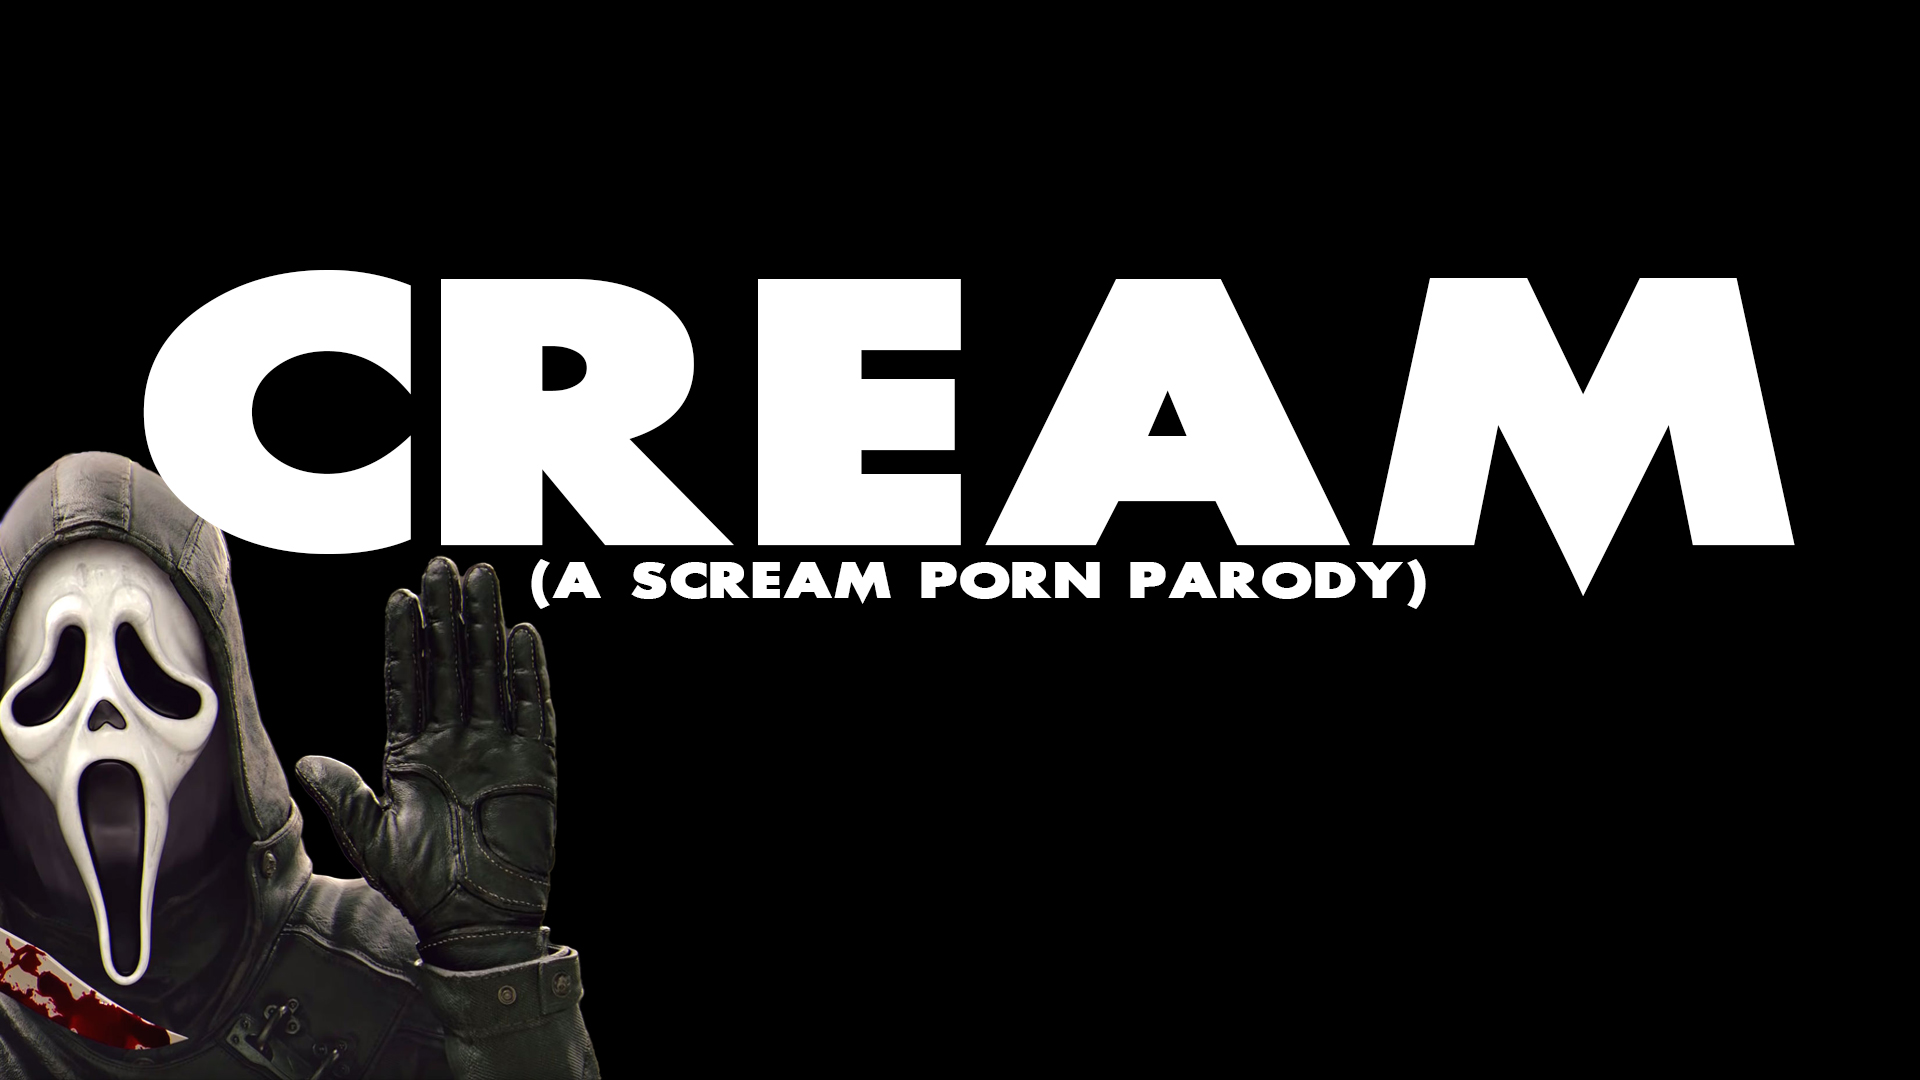 Cream (A Scream Porn Parody)